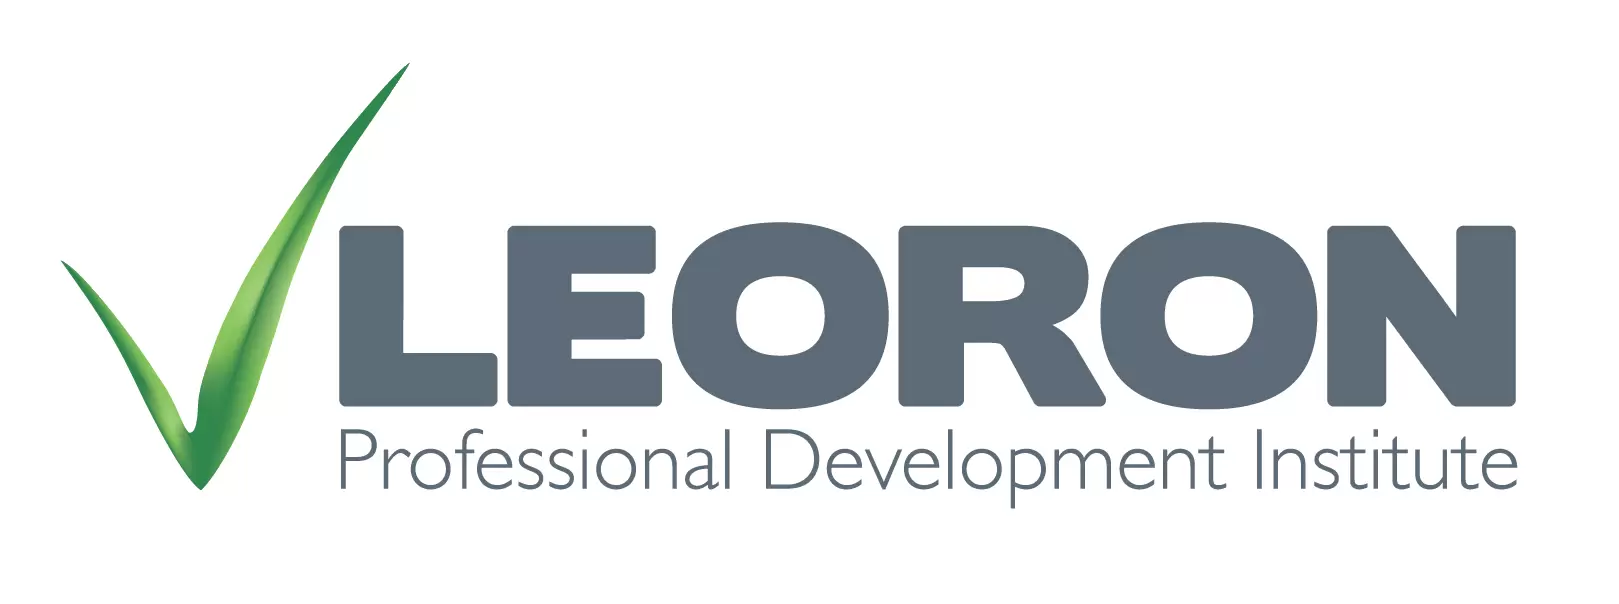 Leoron Professional Development Institute logo